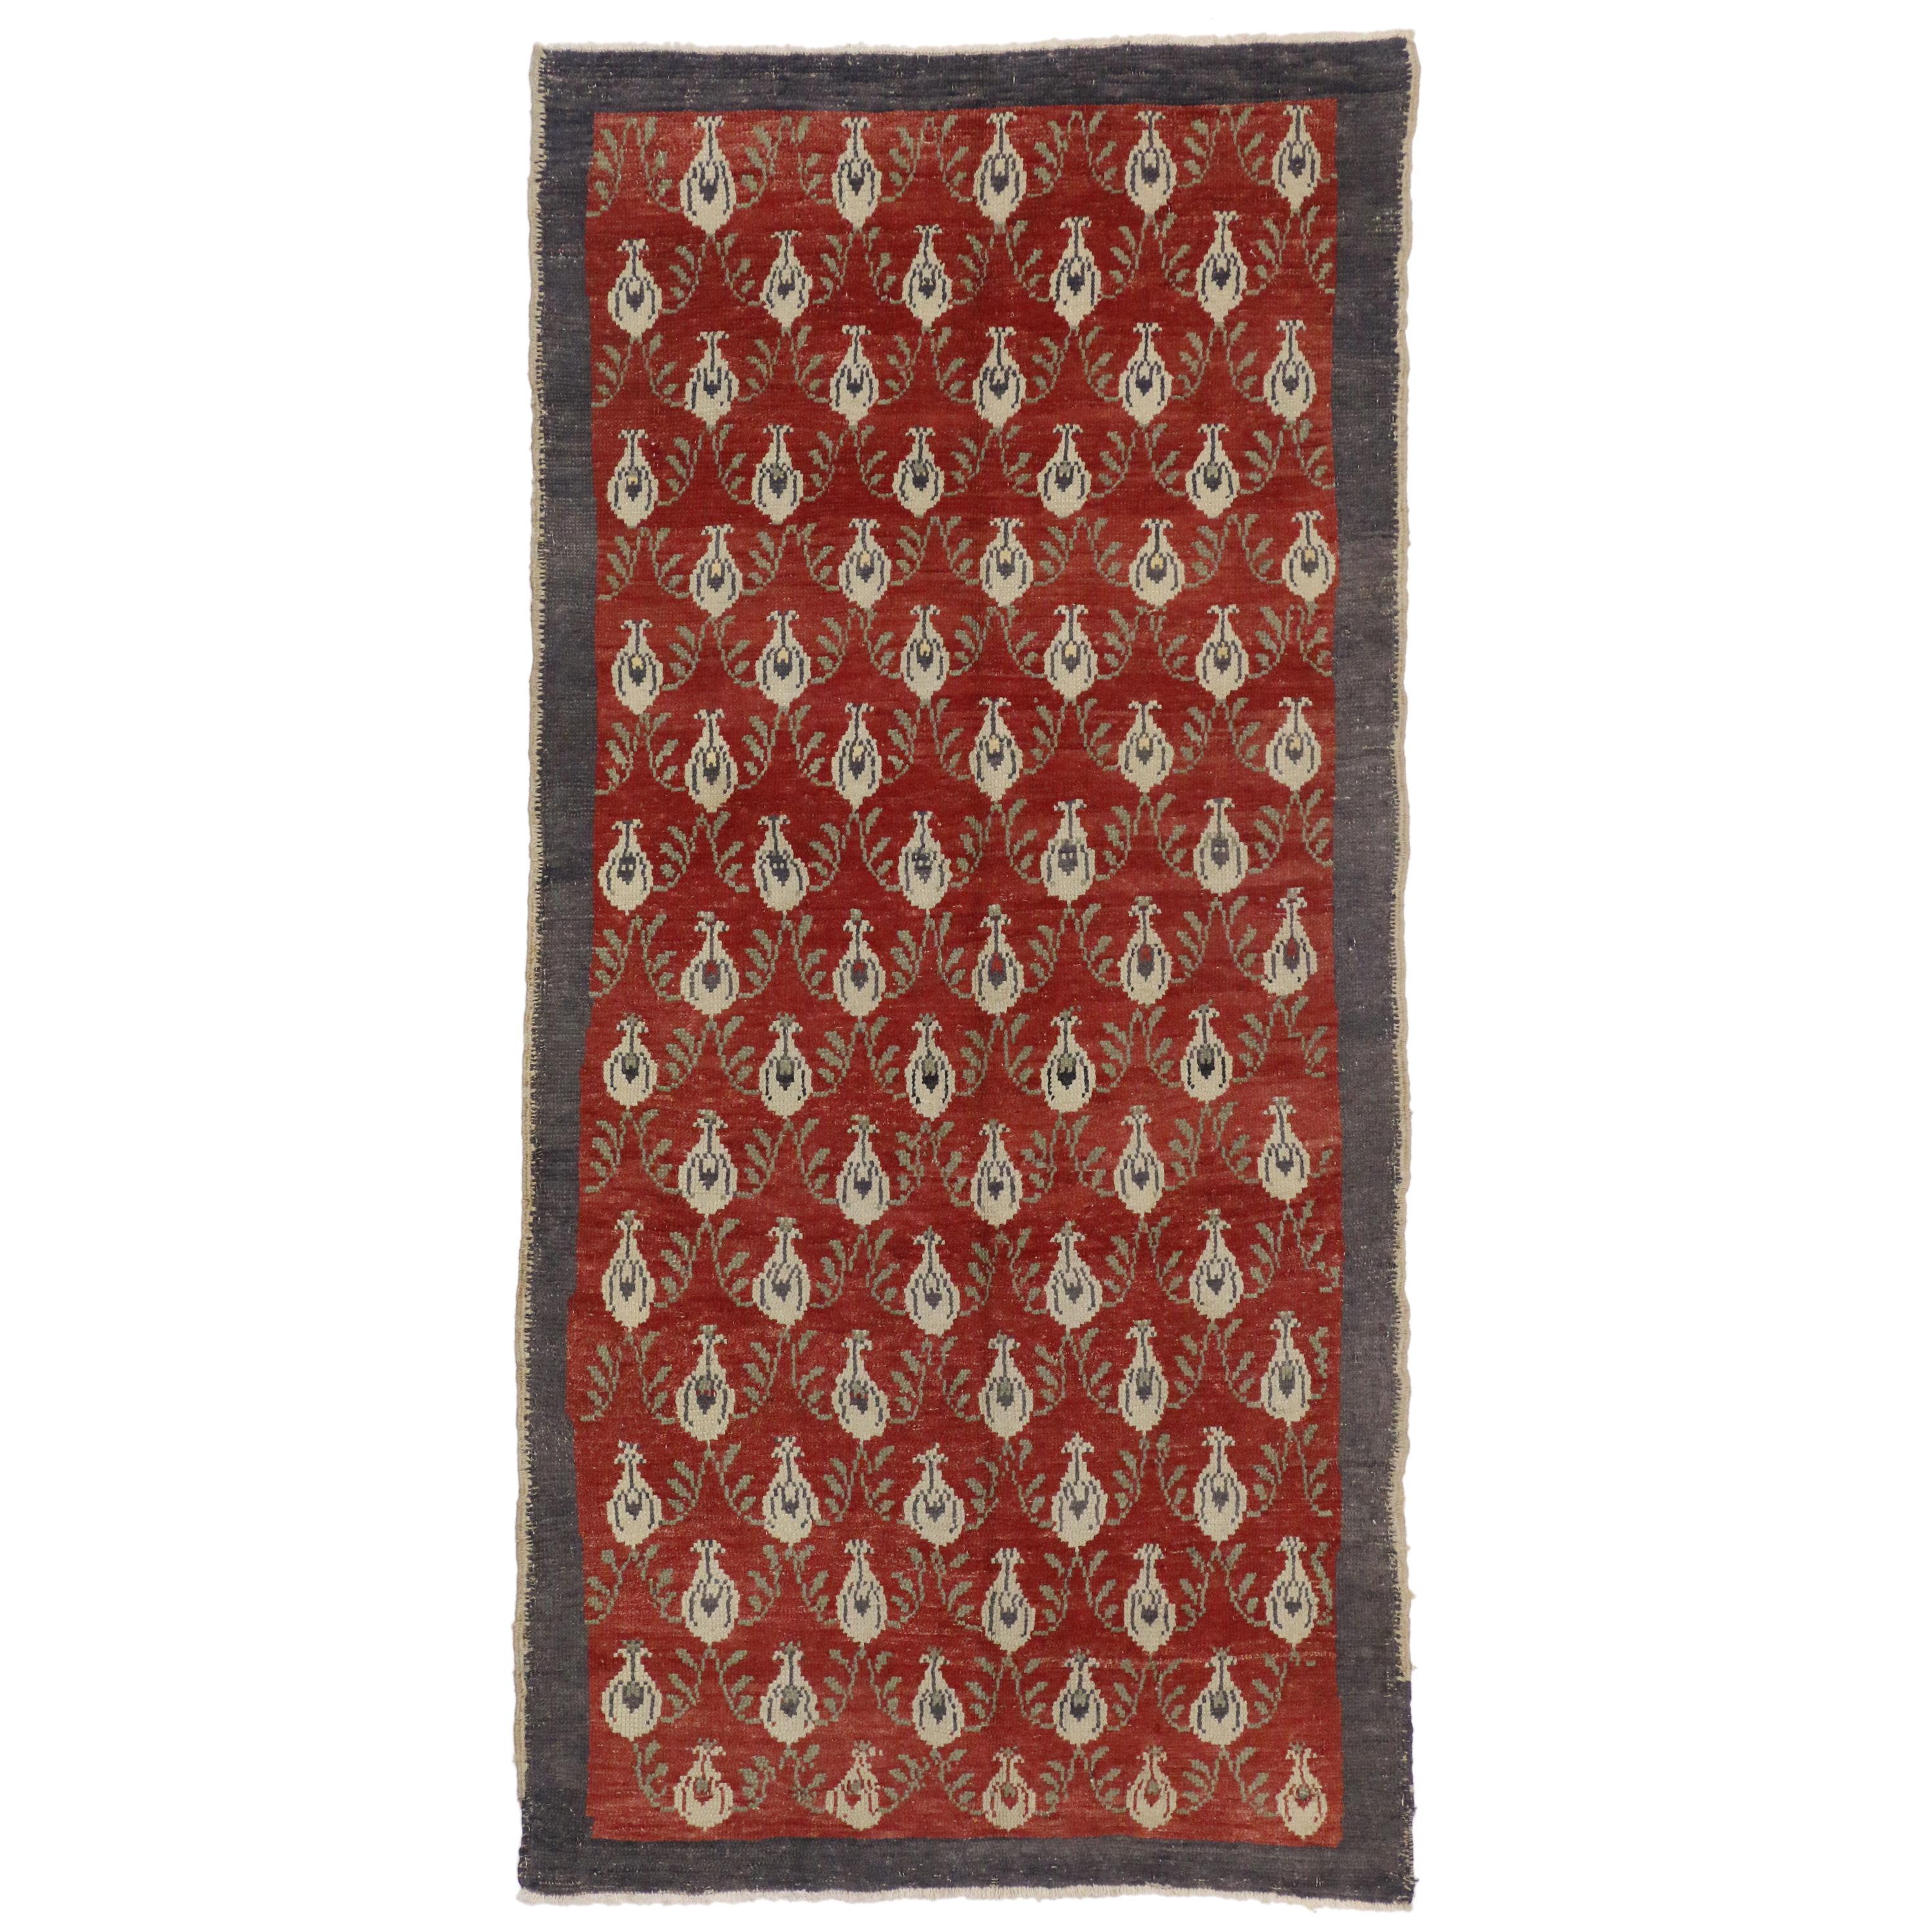 Türkischer Oushak-Teppich im romantischen Handwerksstil im Vintage-Stil